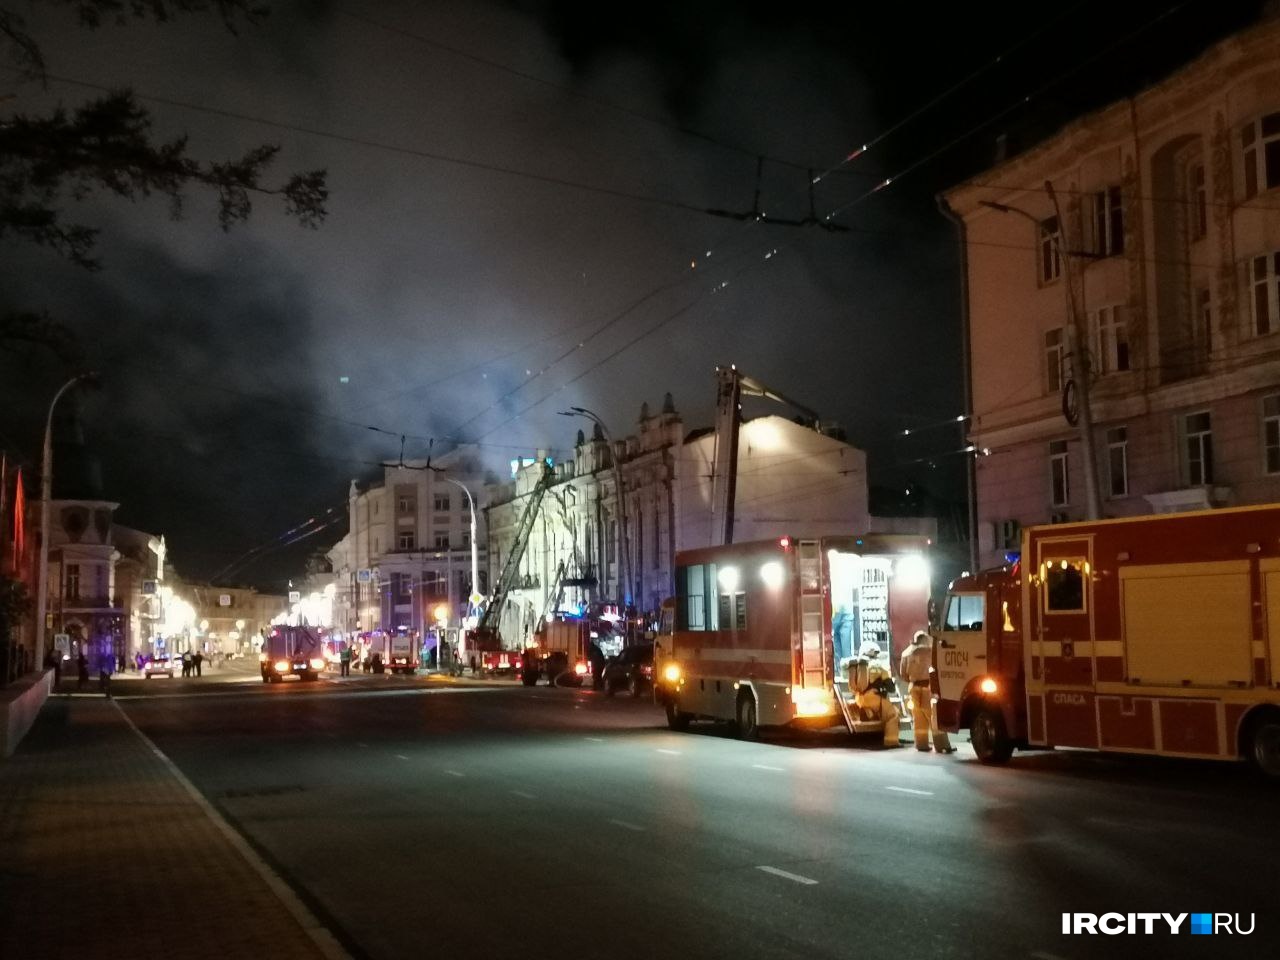 Пожар в здании иркутского ТЮЗа локализован ближе к часу ночи 14 мая